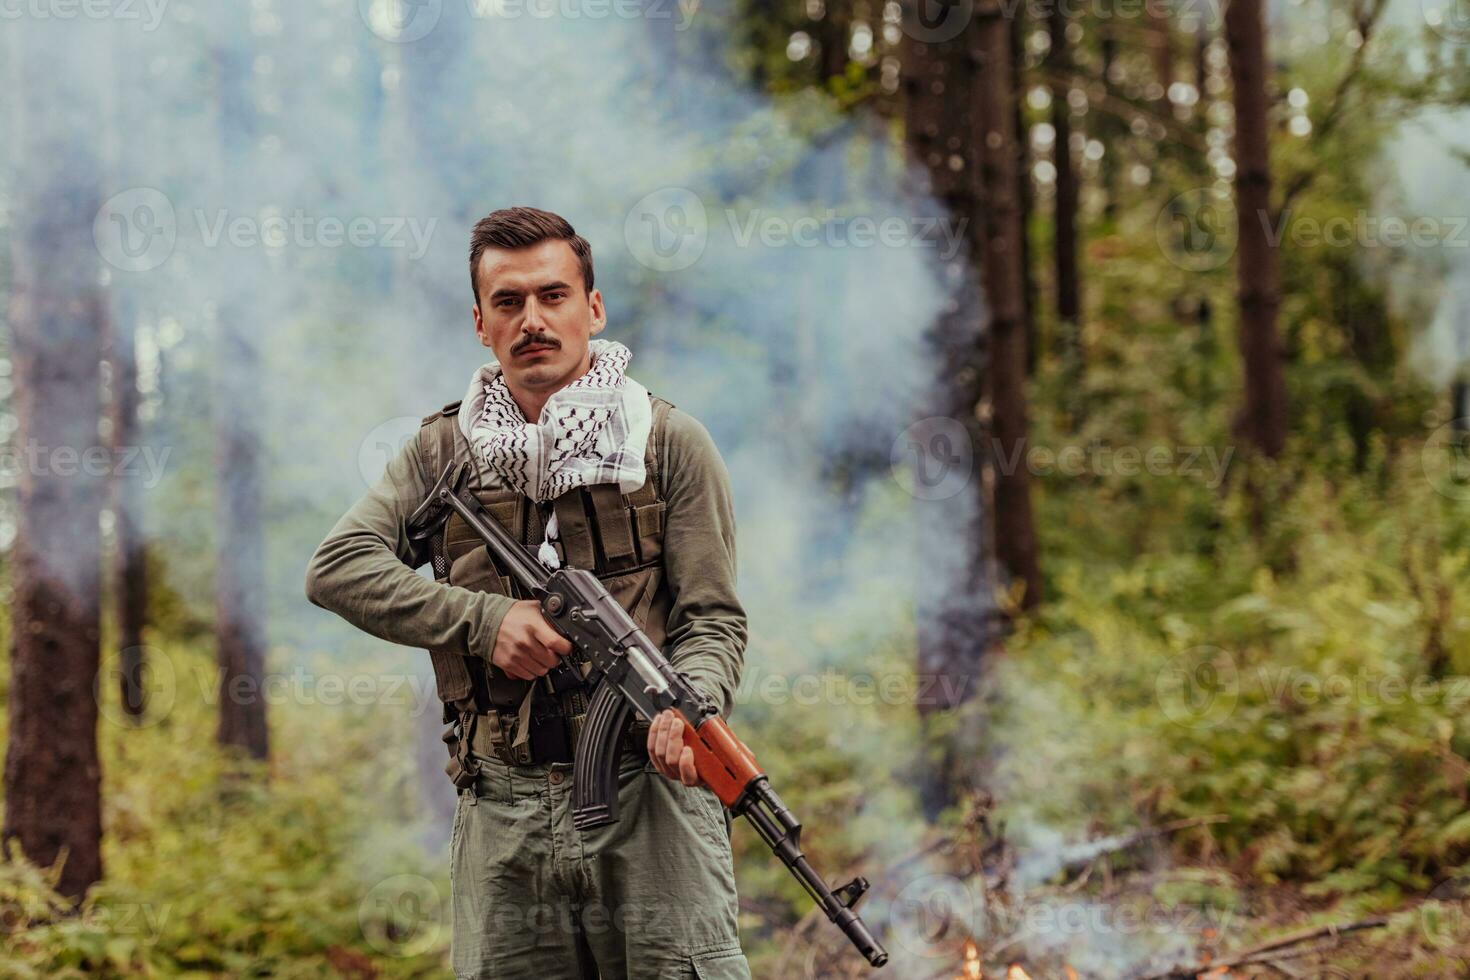 wütend Terrorist militant Guerilla Soldat Krieger im Wald foto